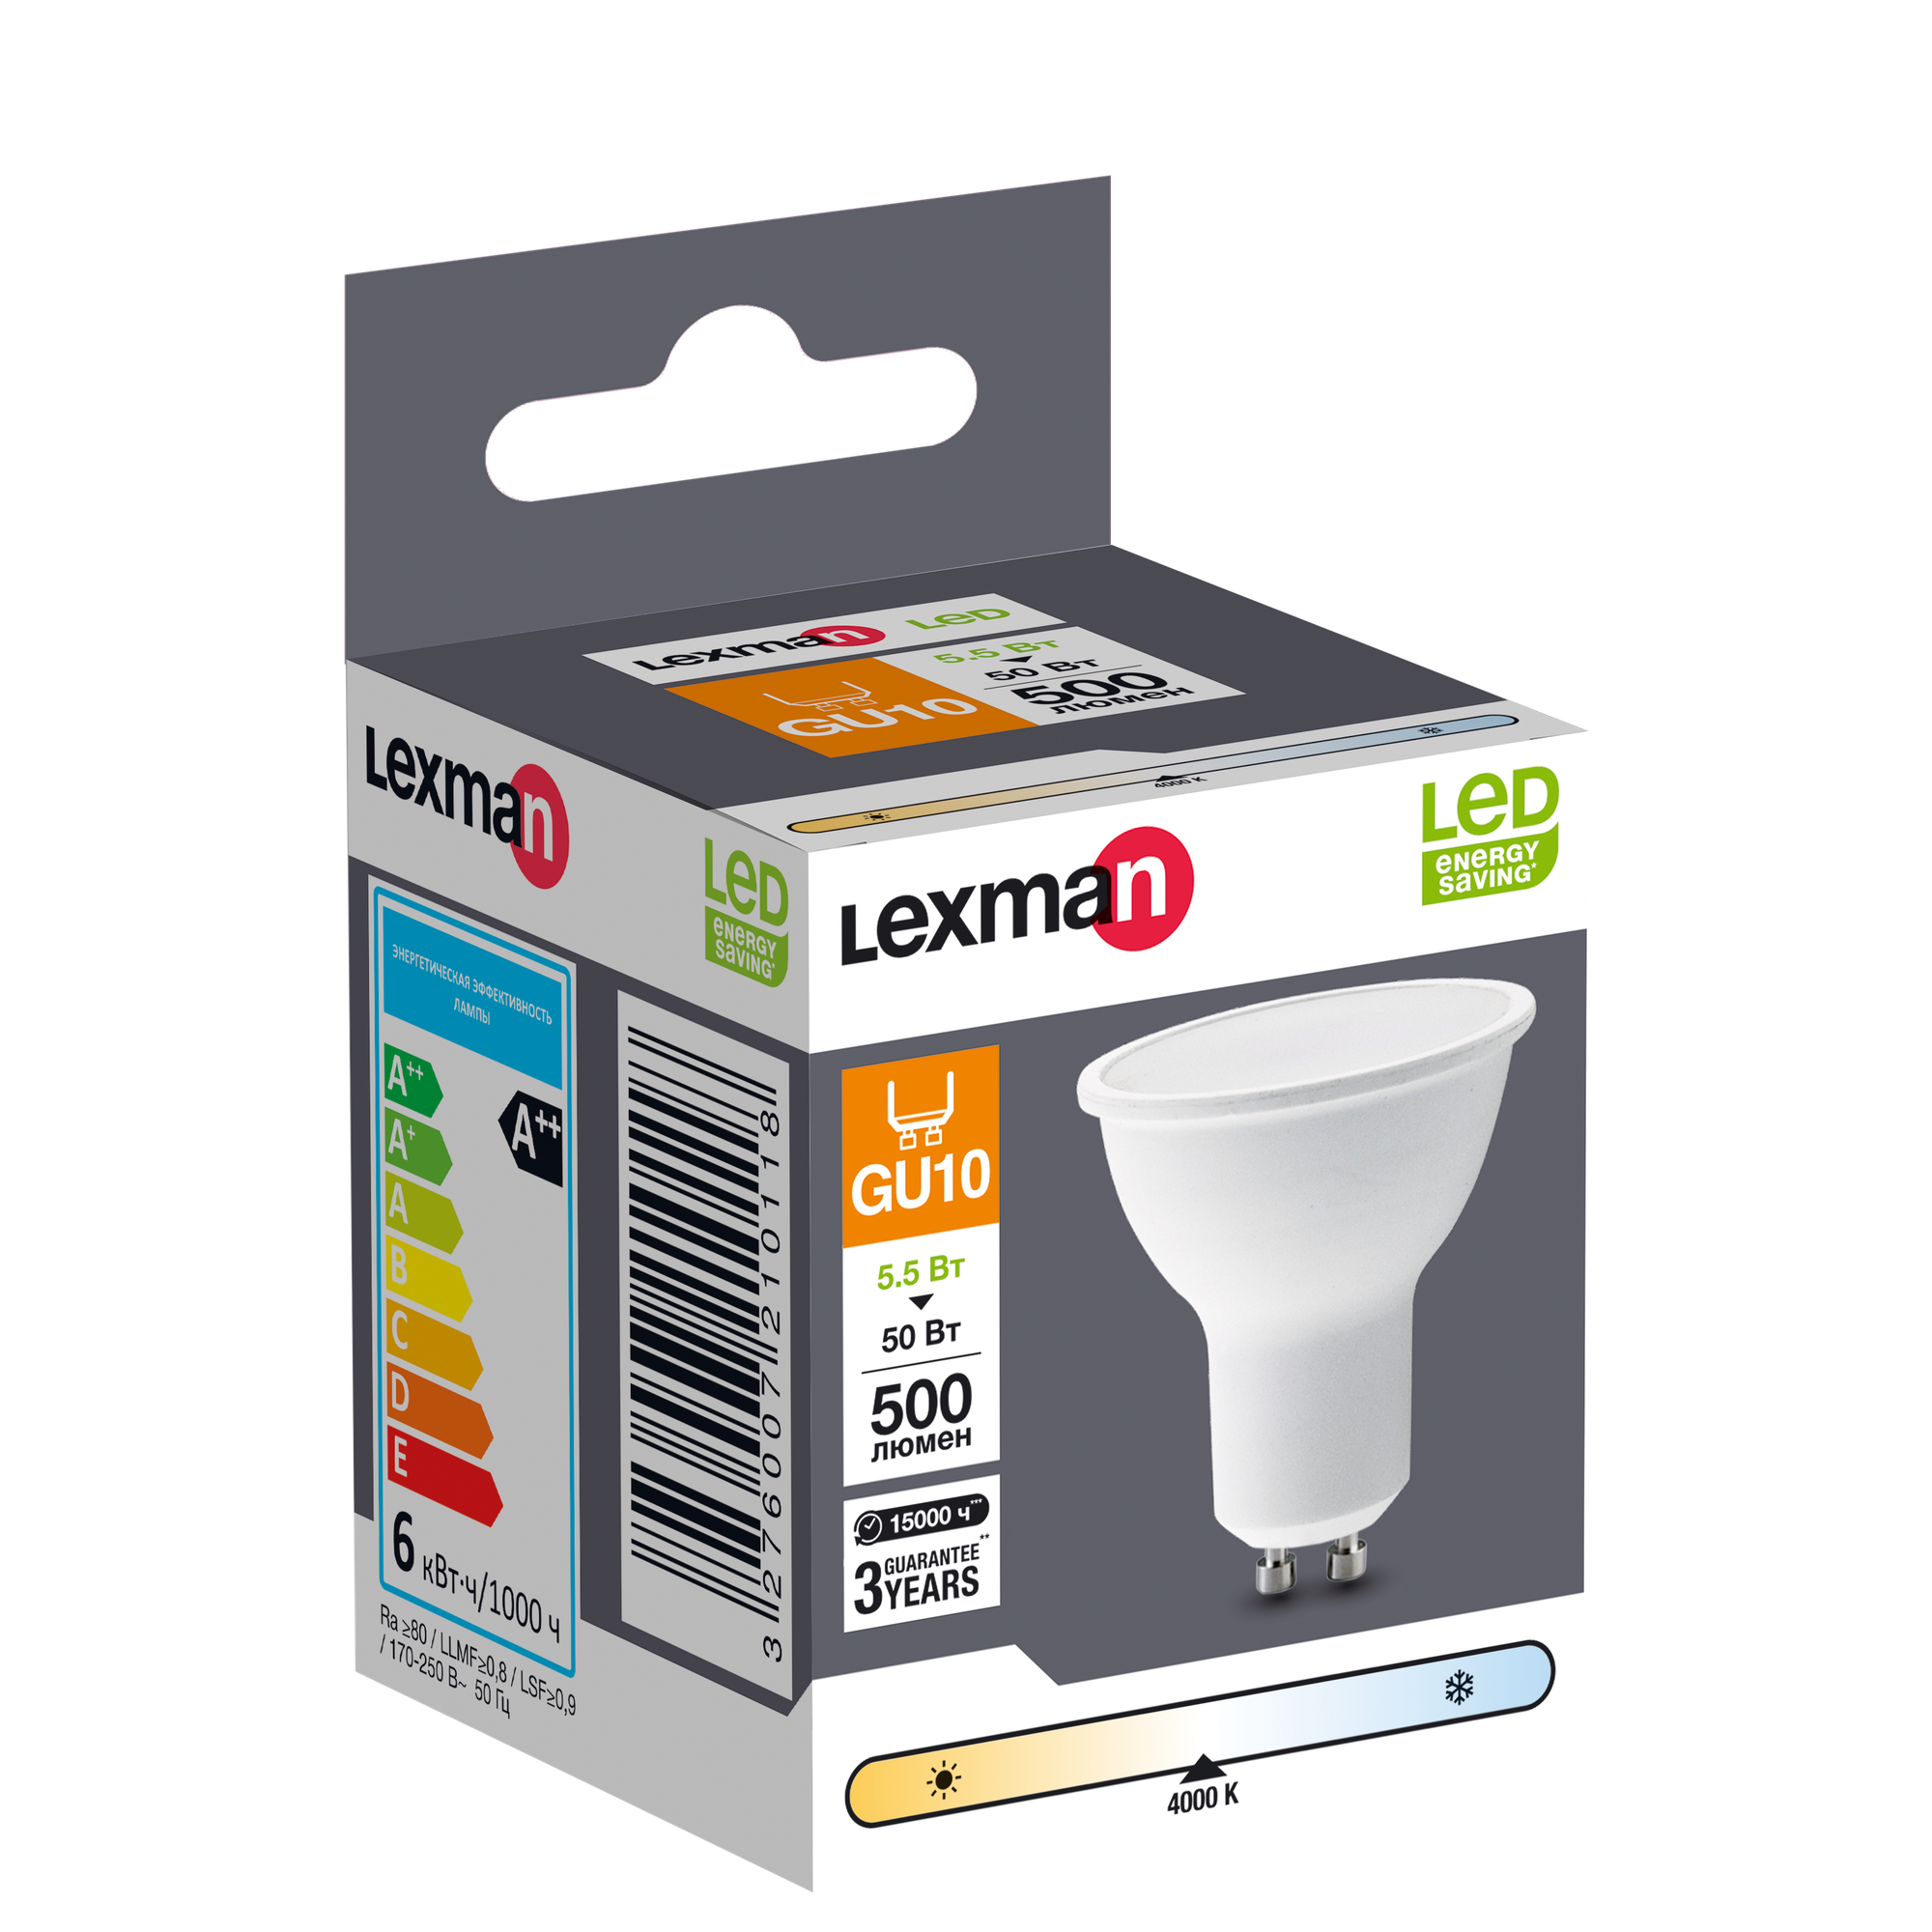 Лампа светодиодная Lexman GU10 175-250 В 6 Вт спот матовая 500 лм нейтральный белый свет - фотография № 6